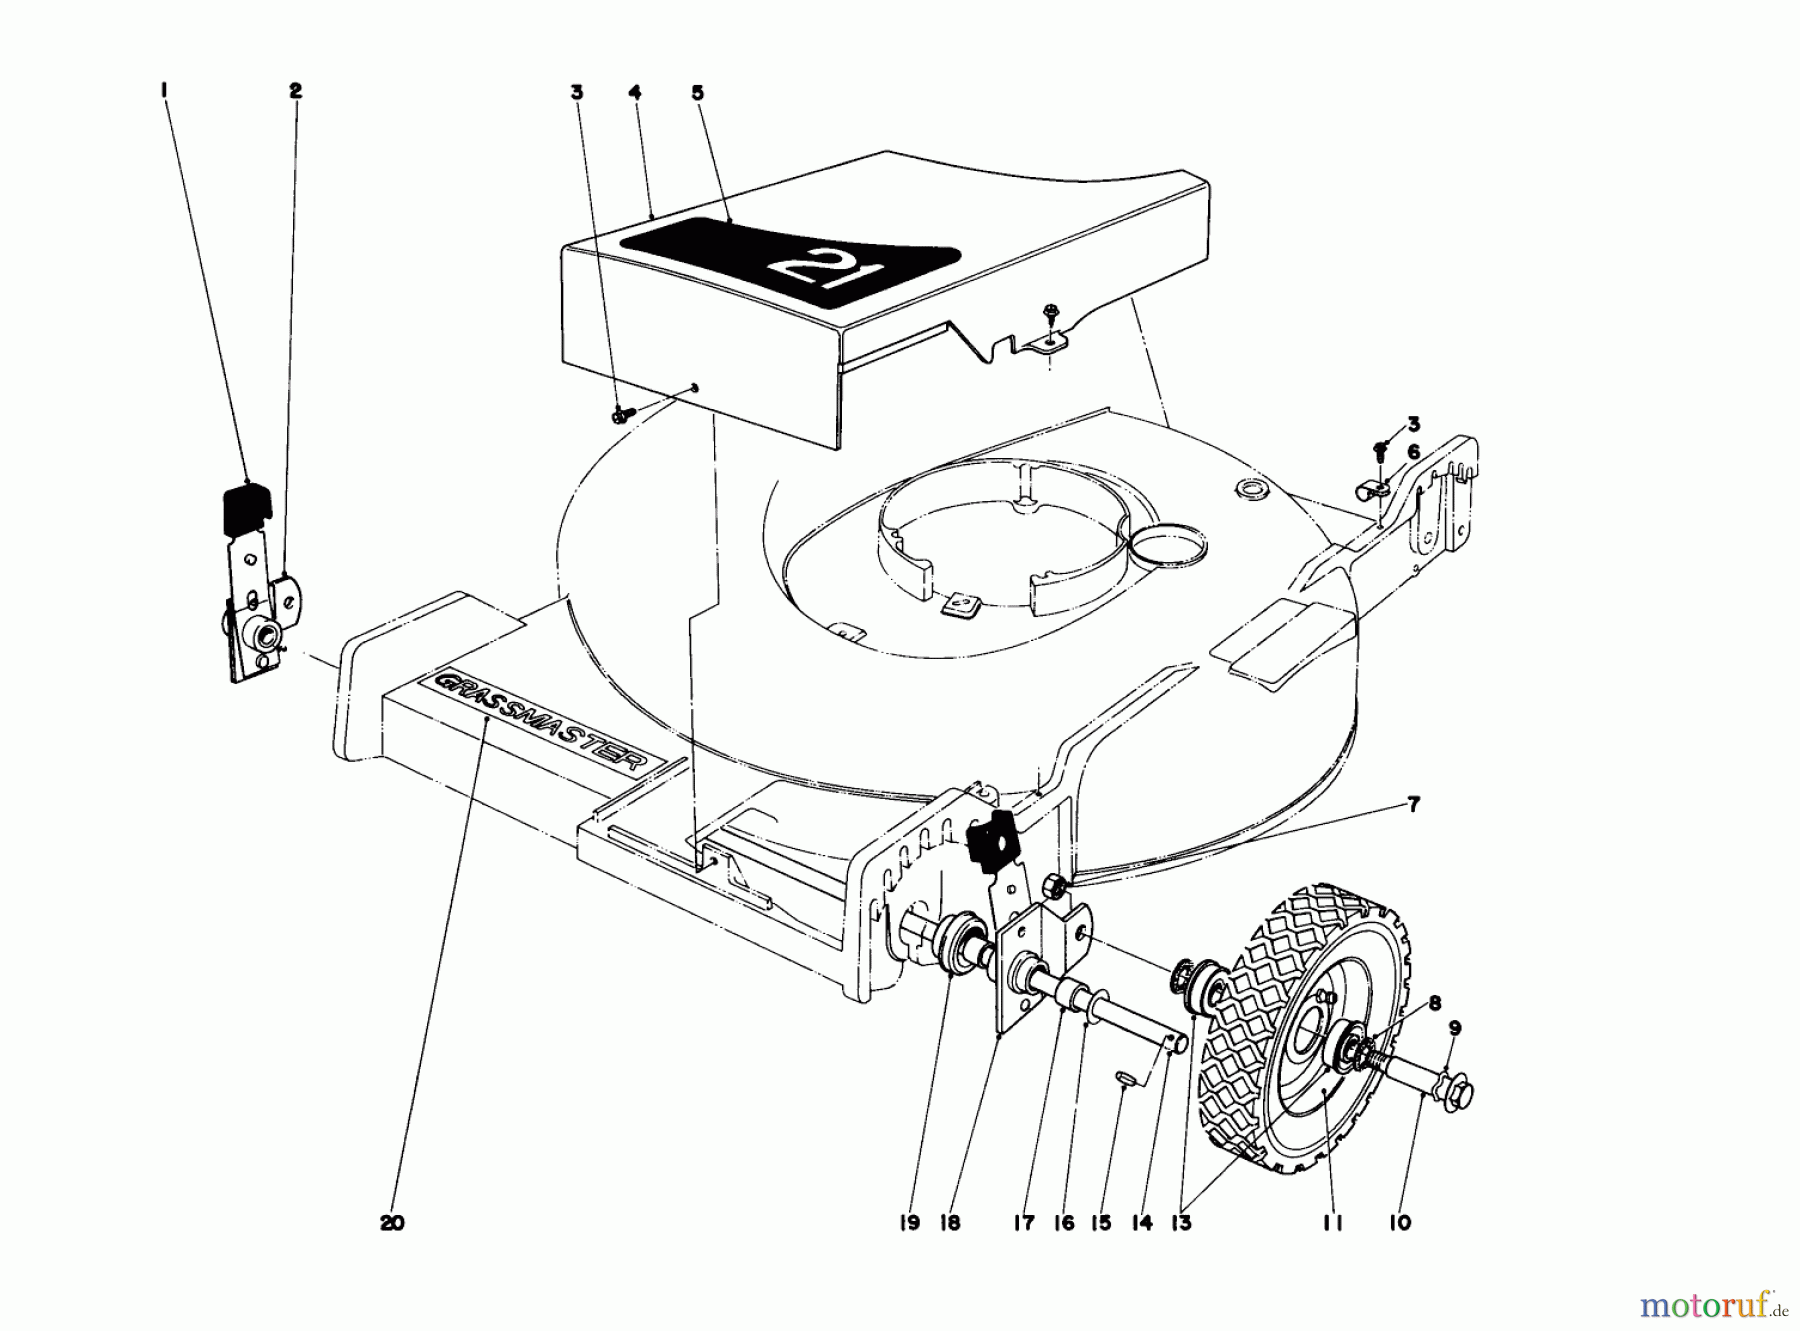  Toro Neu Mowers, Walk-Behind Seite 1 20451 - Toro Lawnmower, 1976 (6000001-6999999) FRONT WHEEL AND PIVOT ARM ASSEMBLY